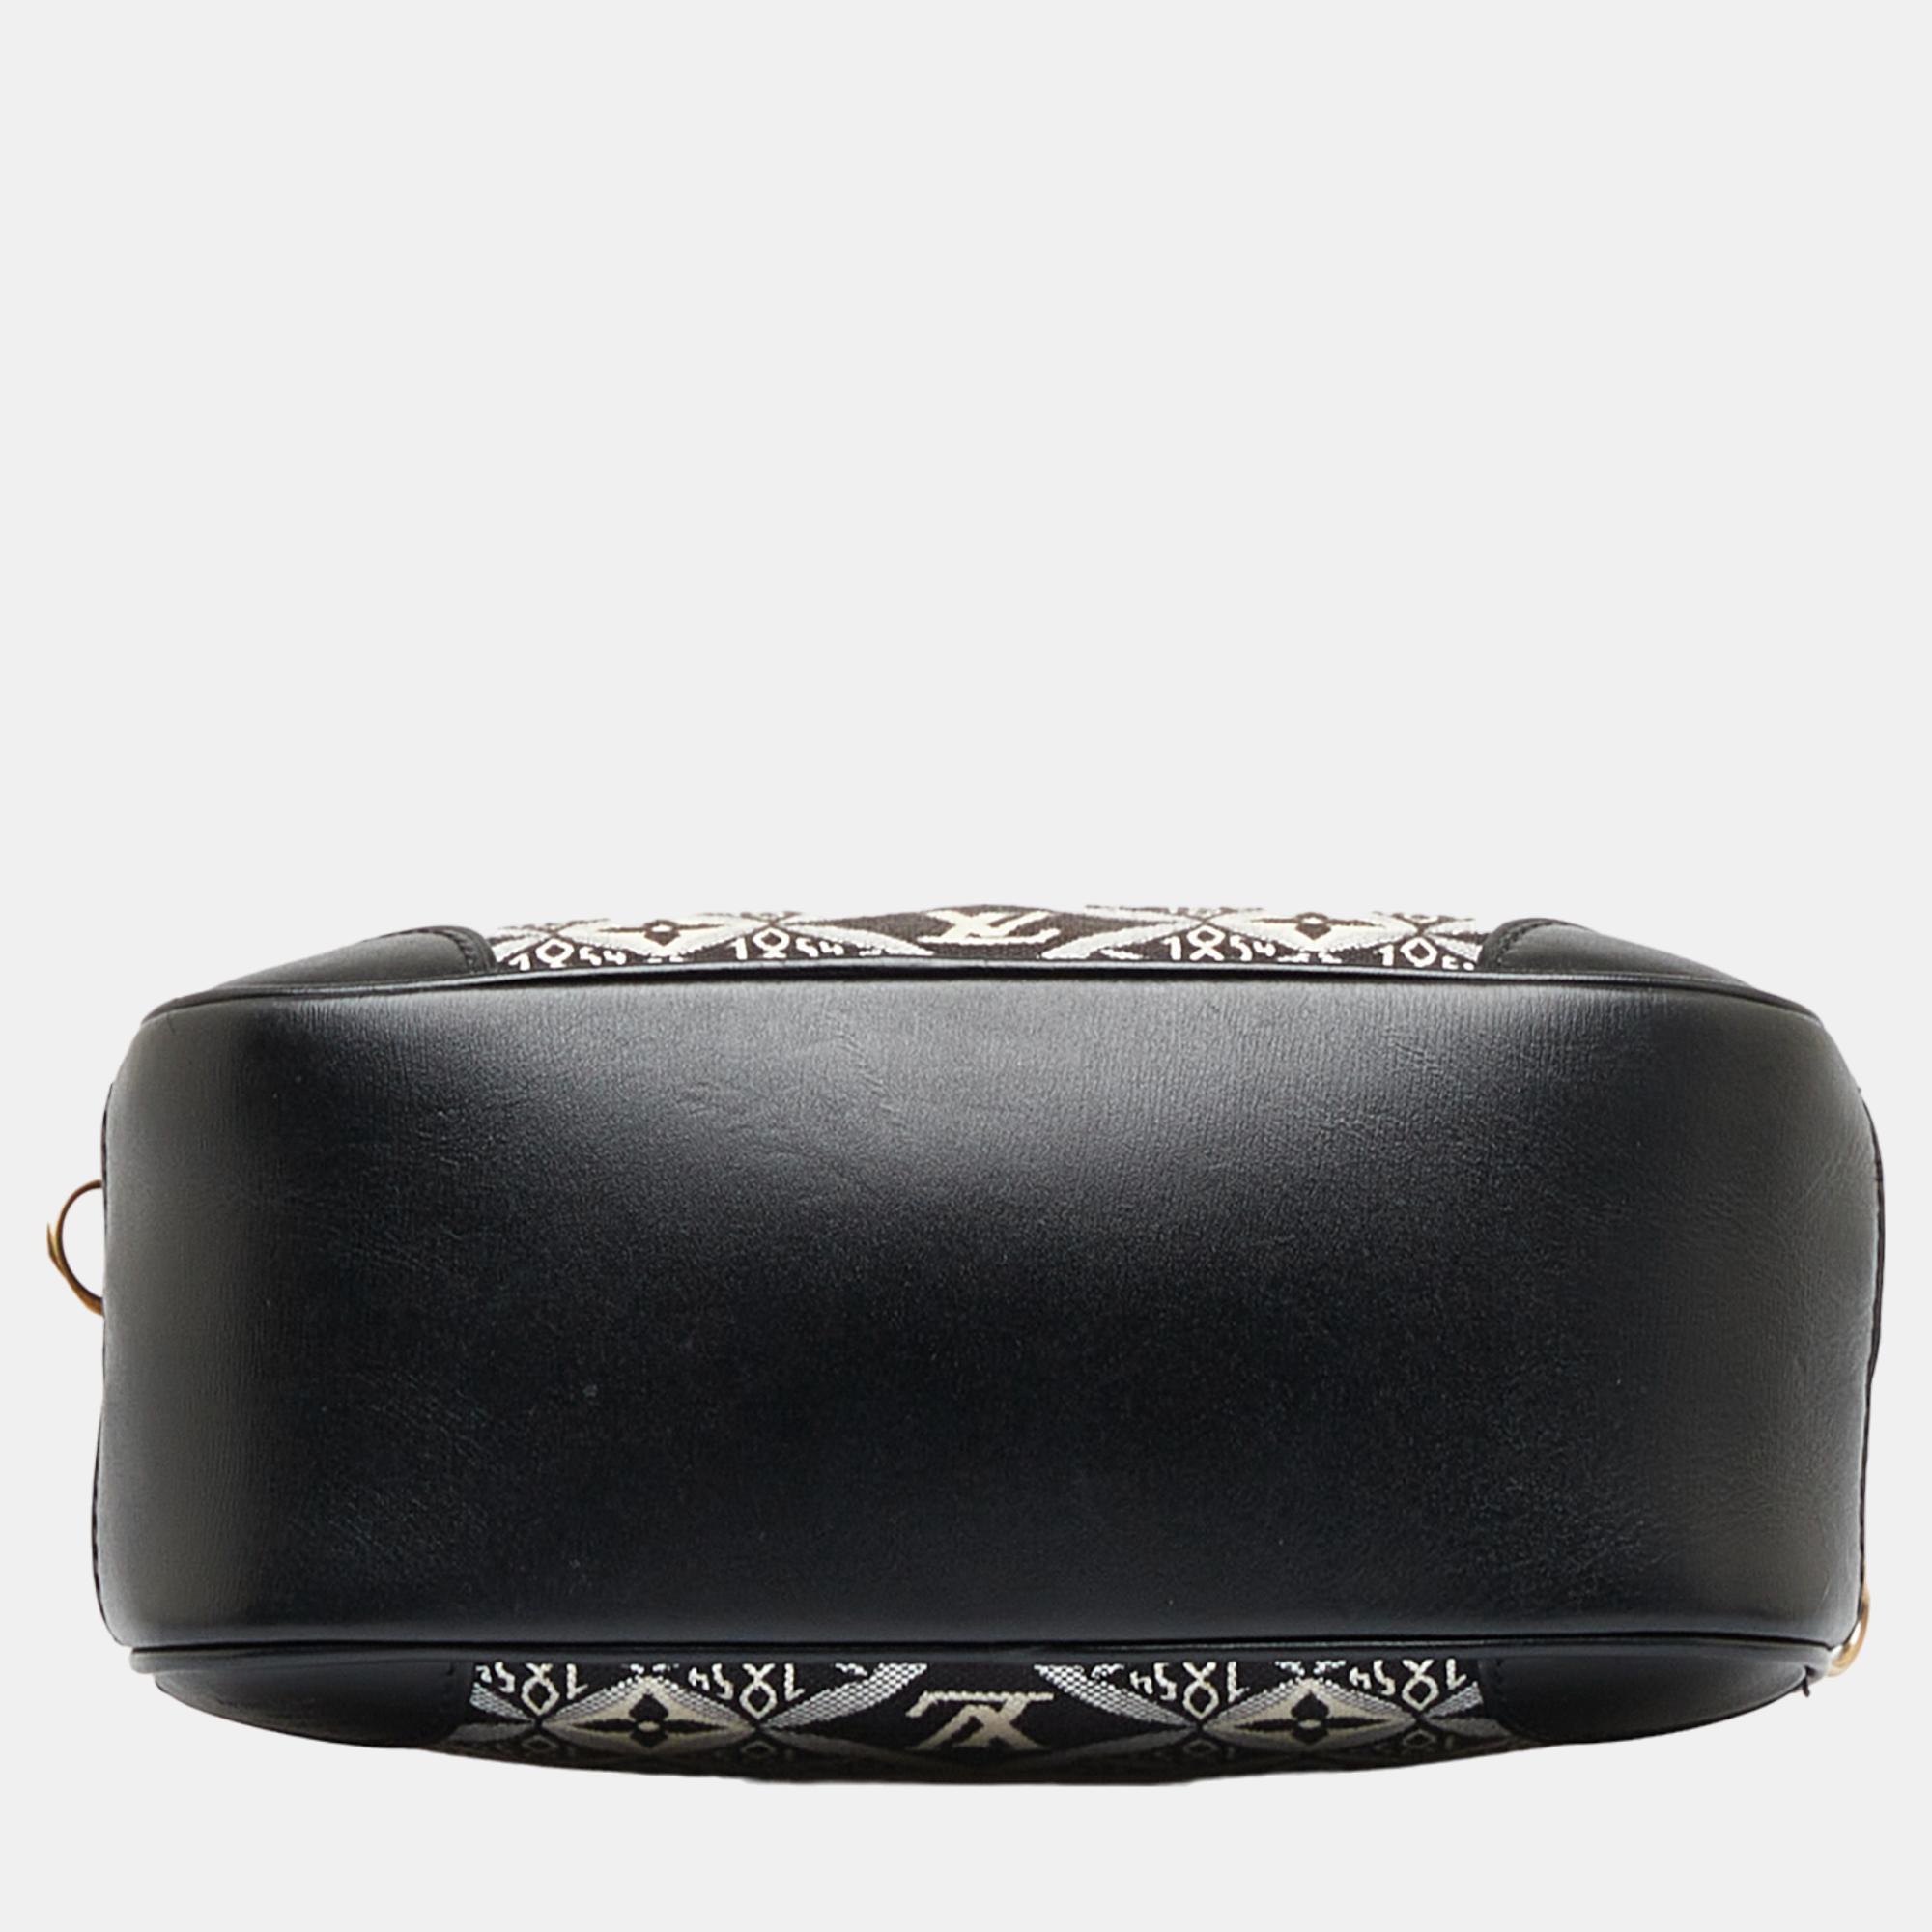 Louis Vuitton Black Since 1854 Deauville Mini Bag